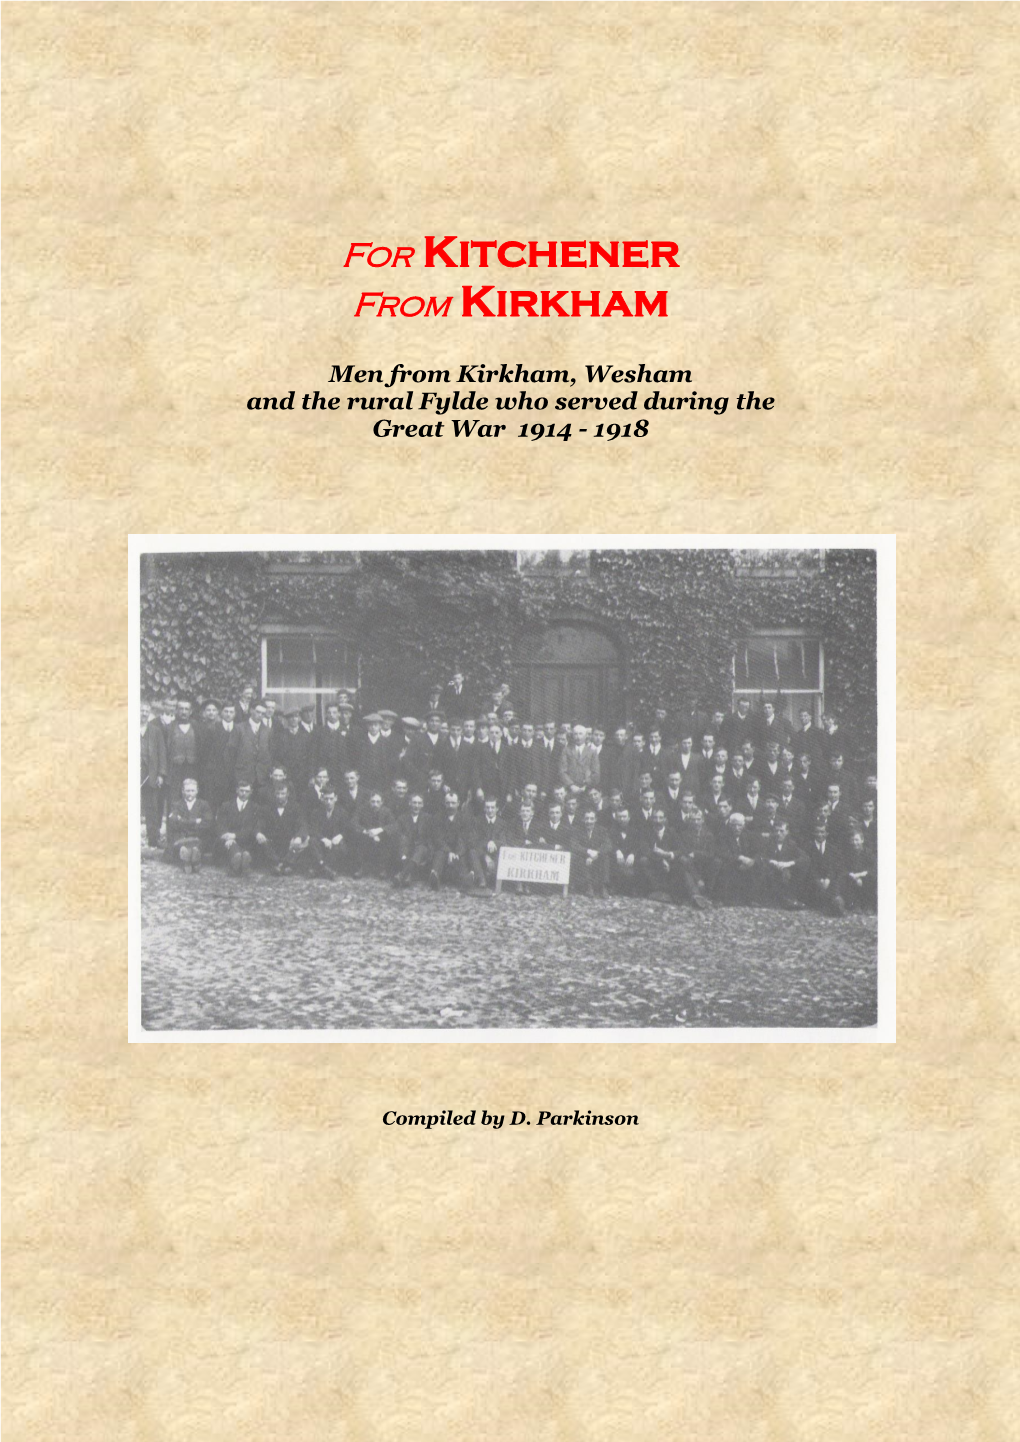 For Kitchener from Kirkham